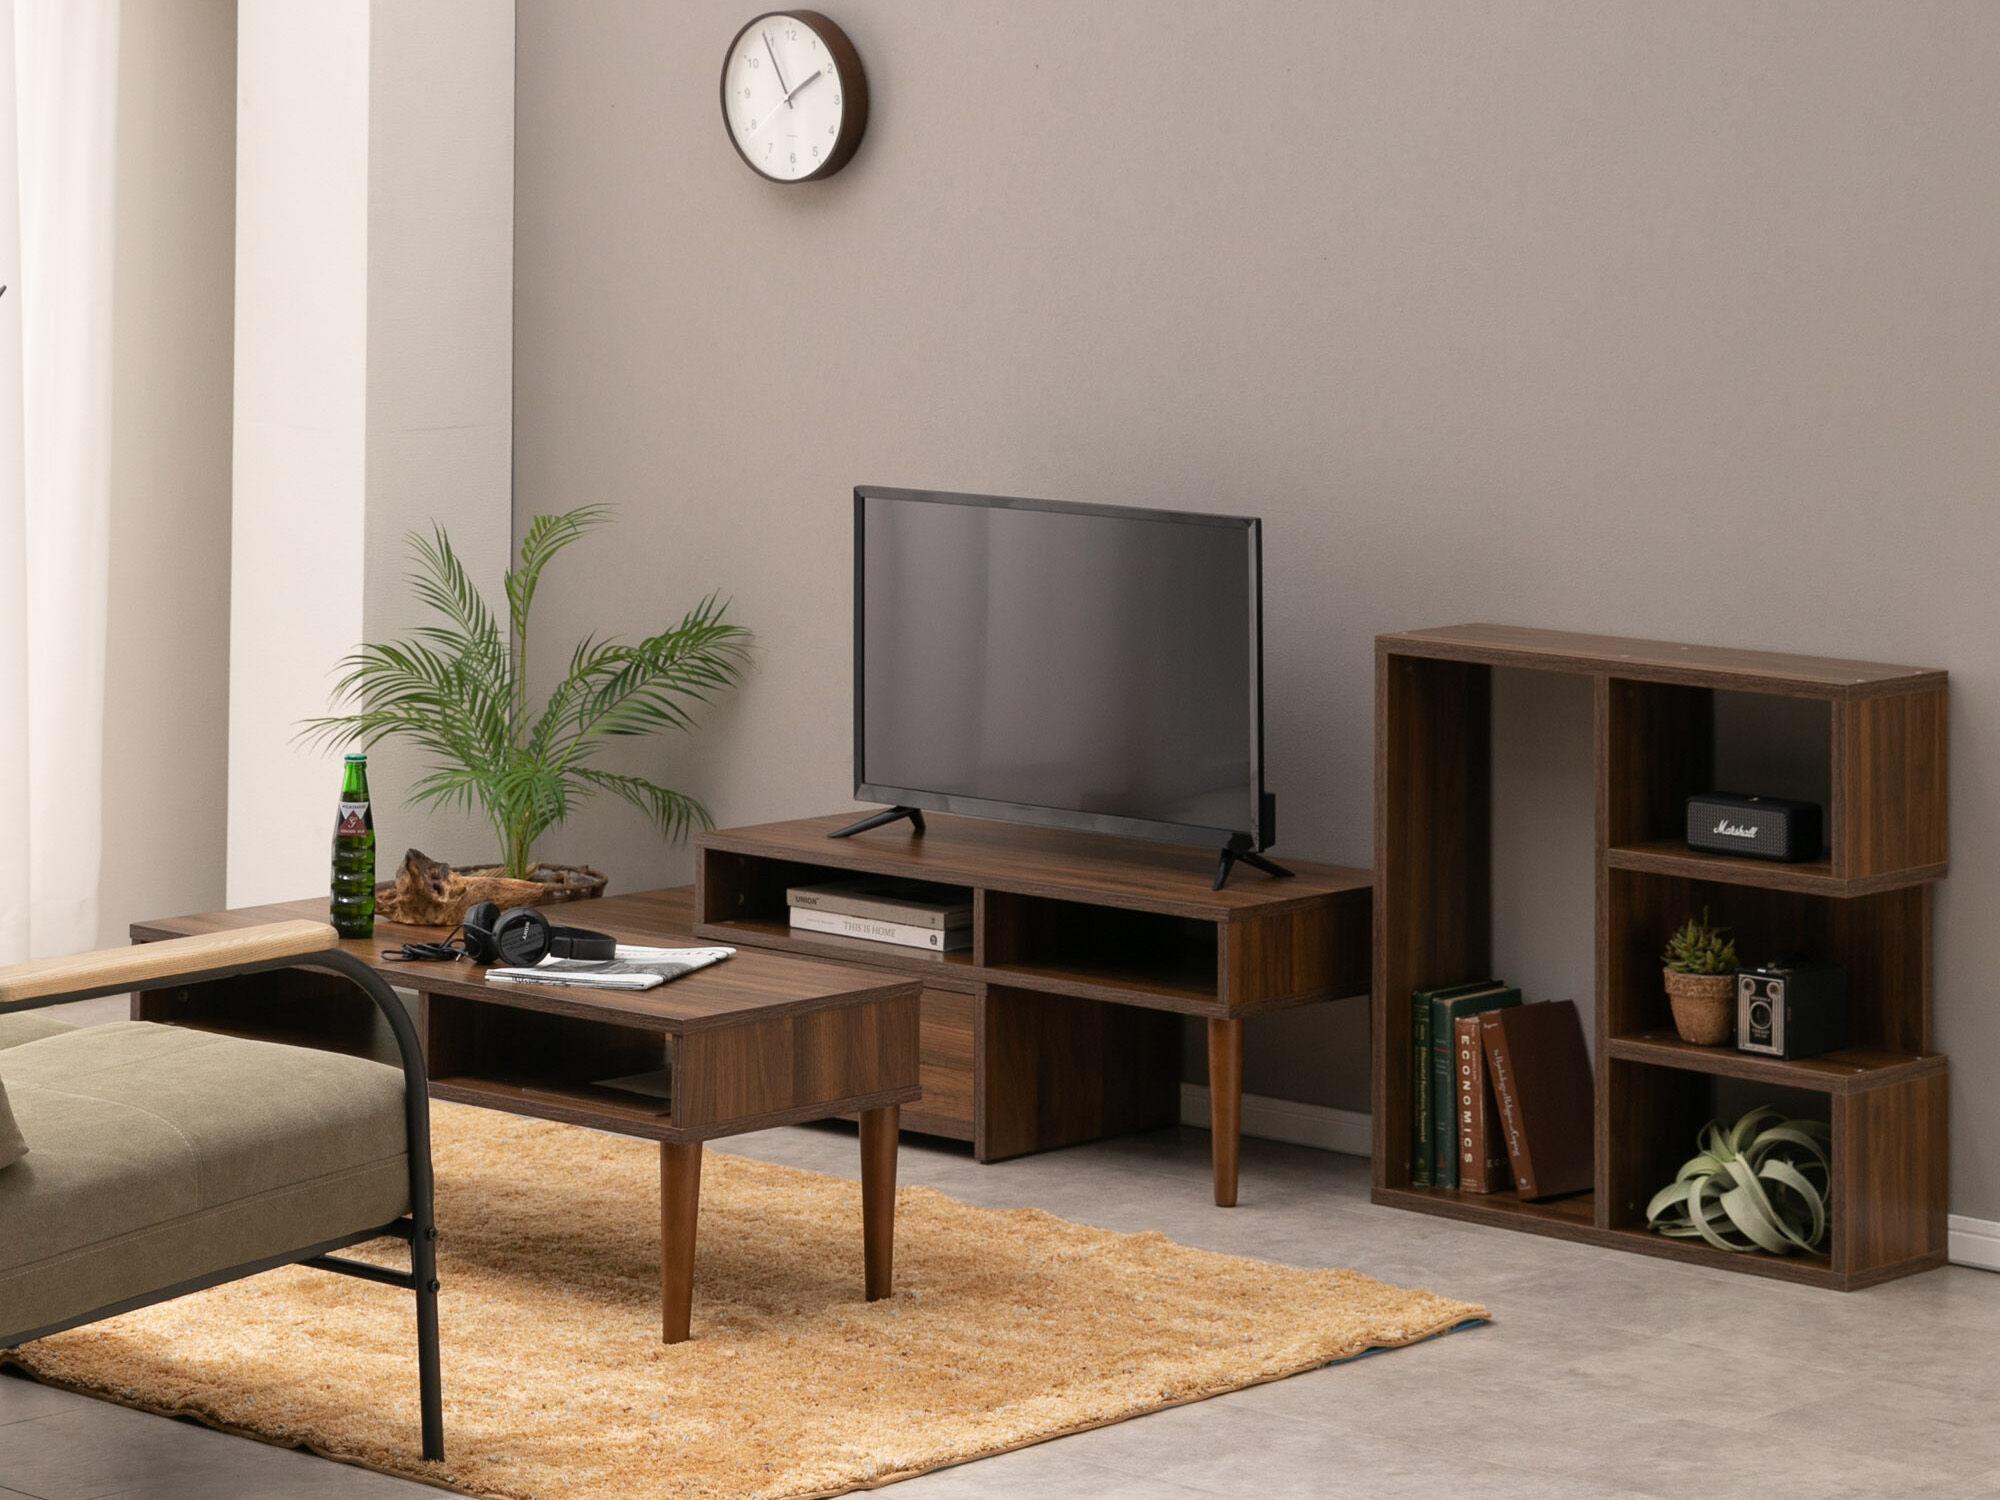 コンパクトな部屋でも調節できる伸長式の家具